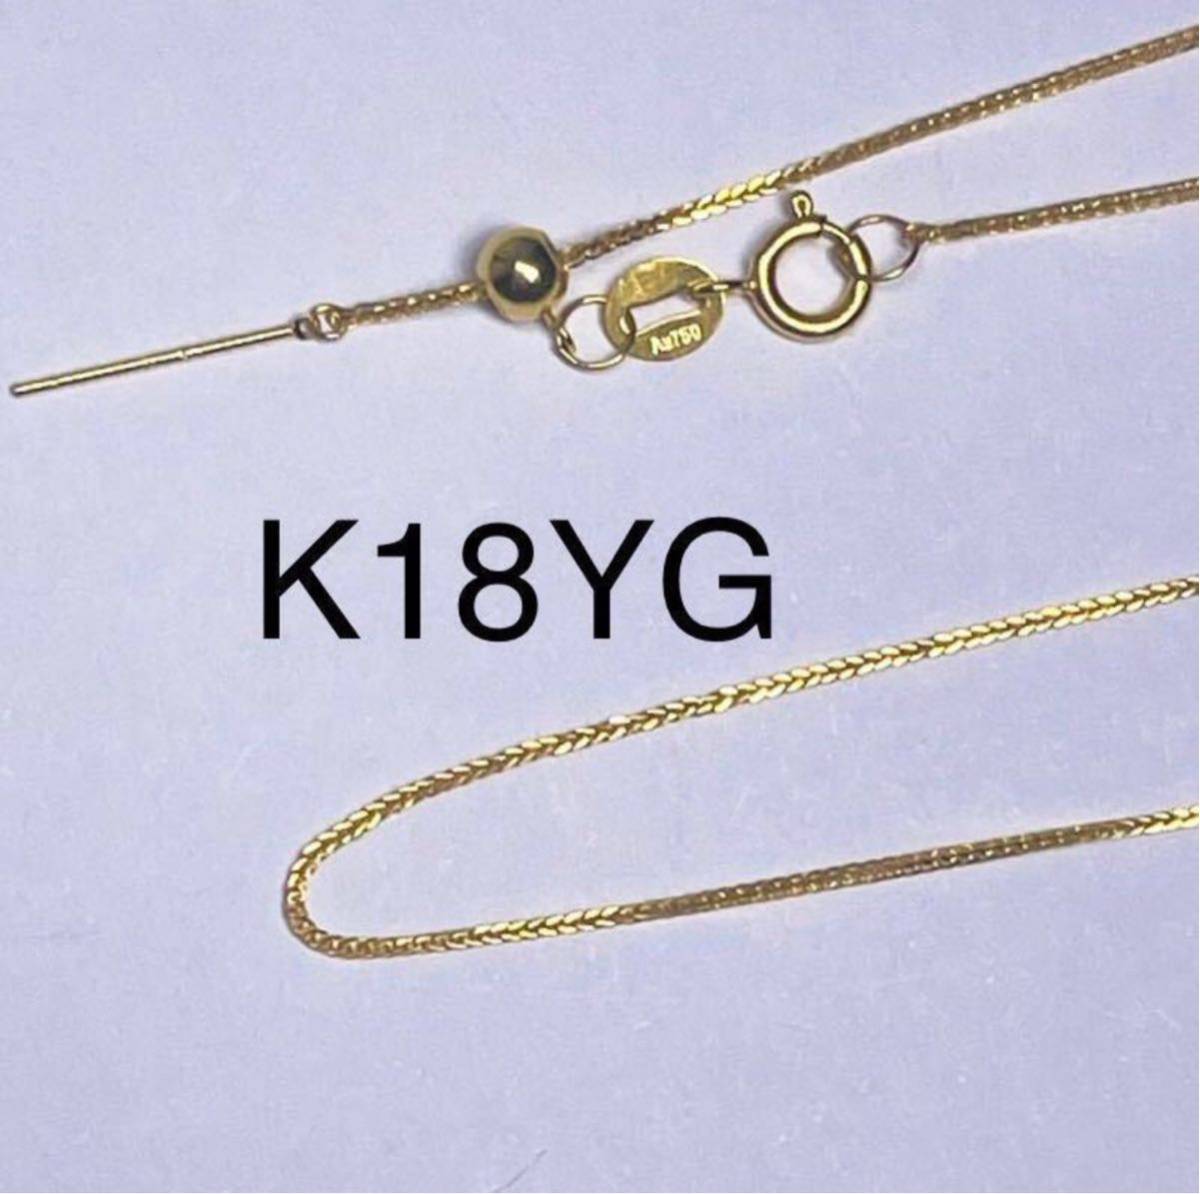 K18YG 調節自由 45cmピンチェーン 18金ネックレス　刻印 地金 ゴールド スライド式 男女兼用 ギフト_画像1